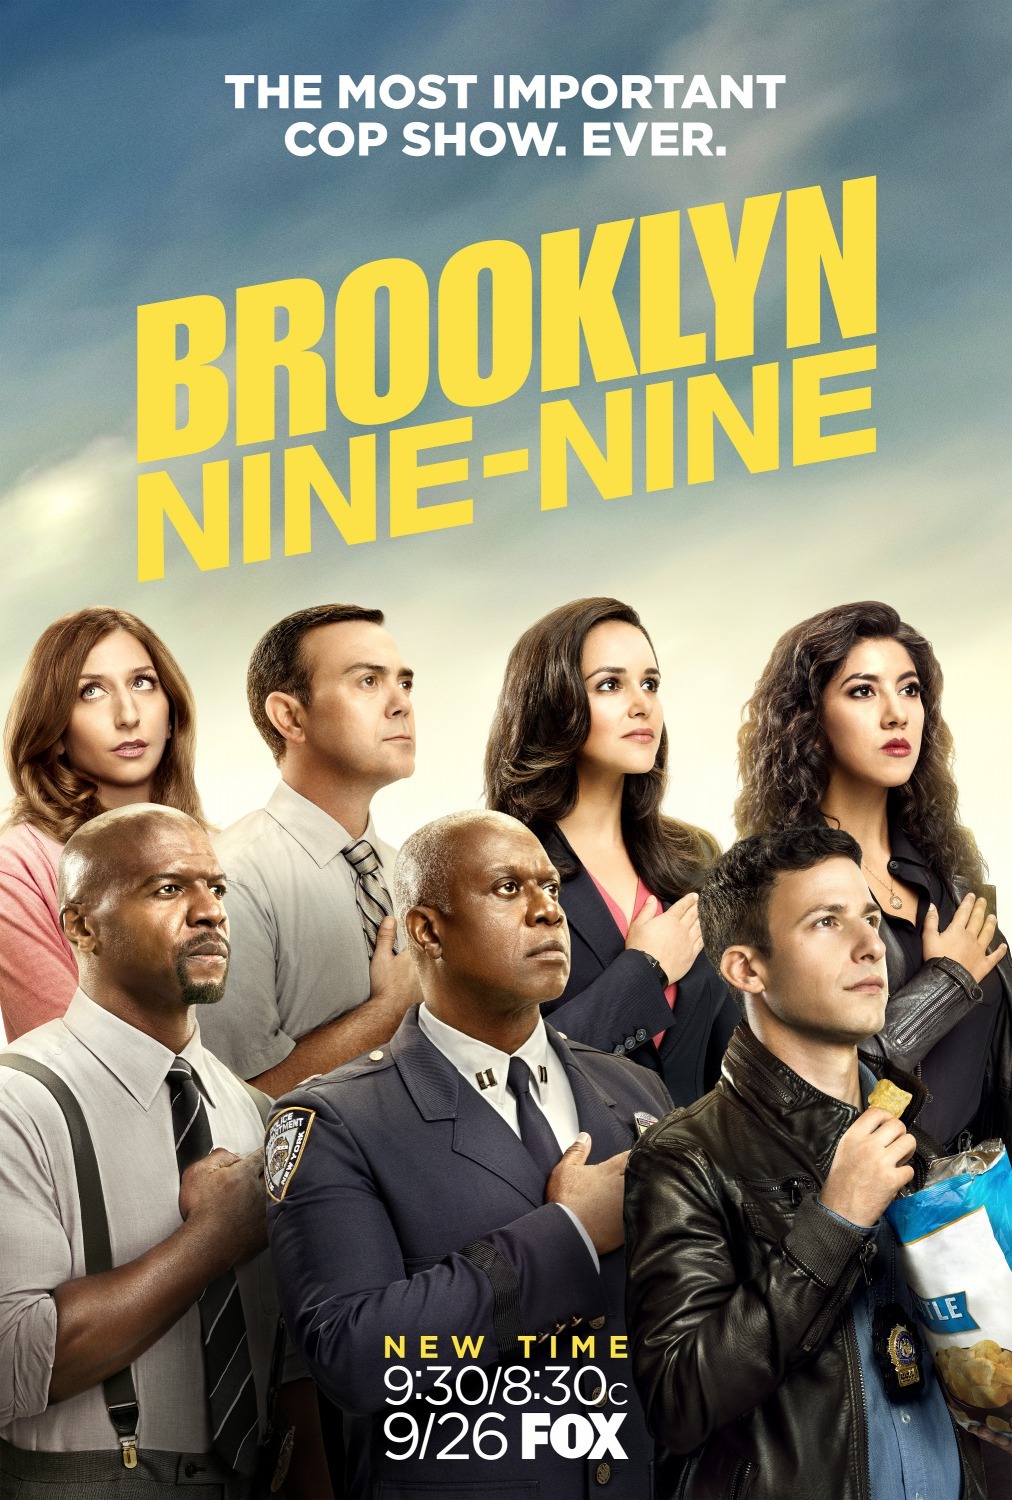 ดูหนังออนไลน์ฟรี Brooklyn Nine-Nine Season 4 EP.11 บรู๊คลินเก้า ปี 4 ตอนที่ 11